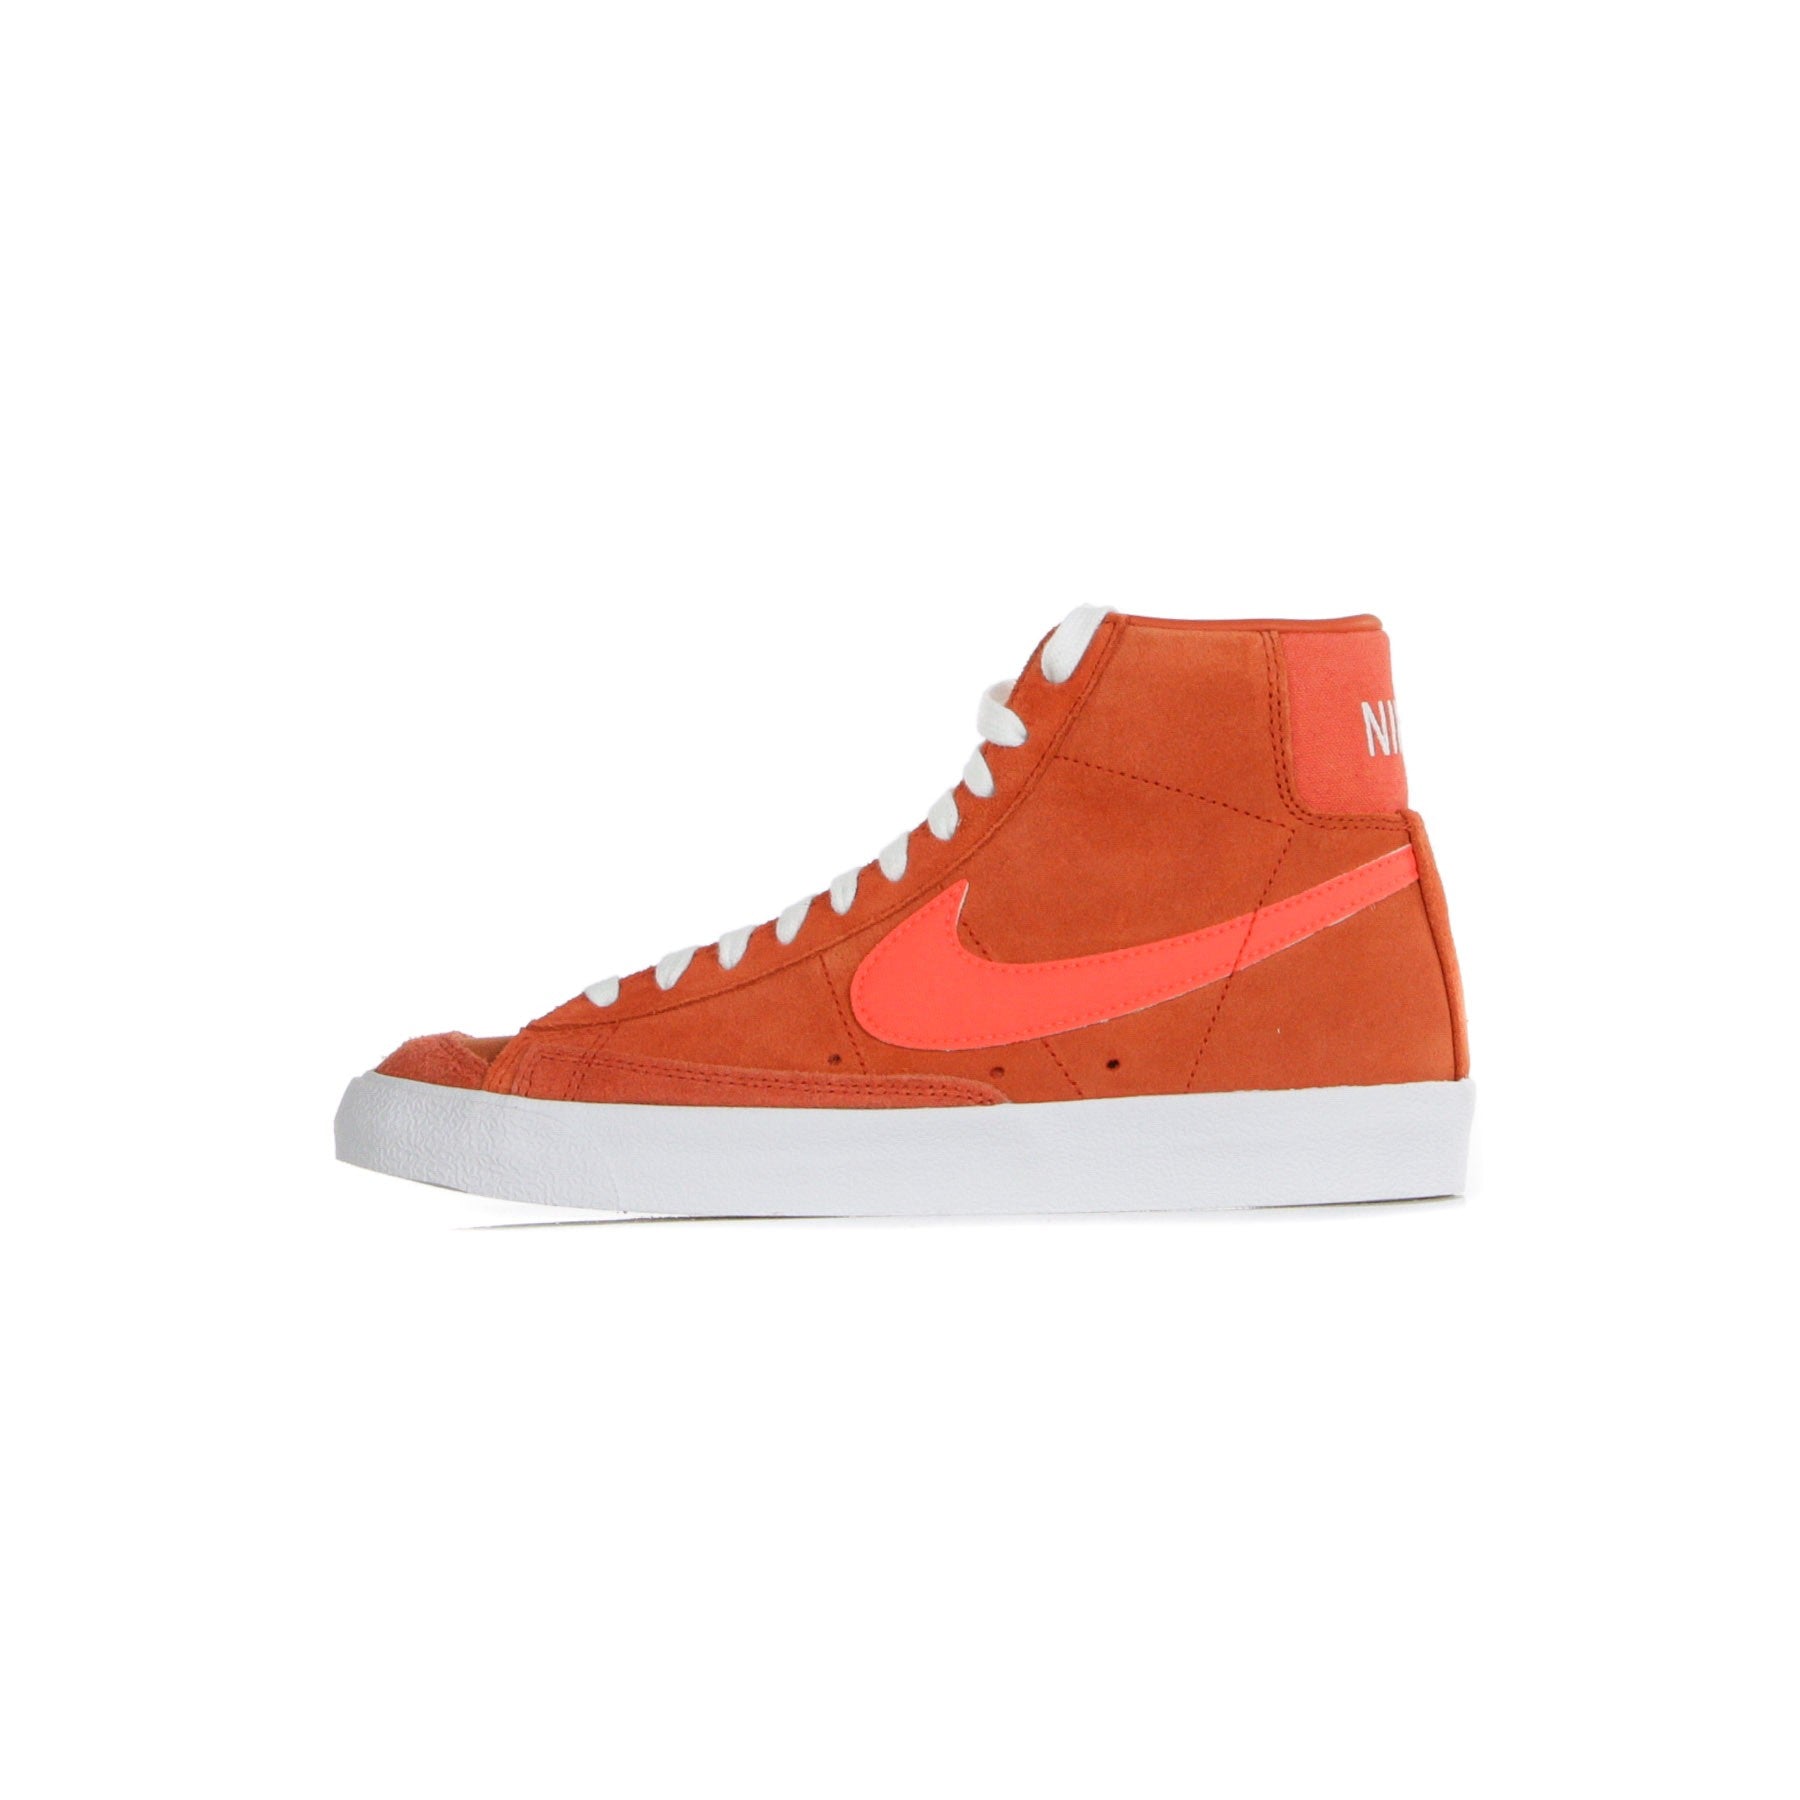 Nike, Scarpa Alta Uomo Blazer Mid 77 Vintage Suede Mix, Mantra Orange/bright Crimson